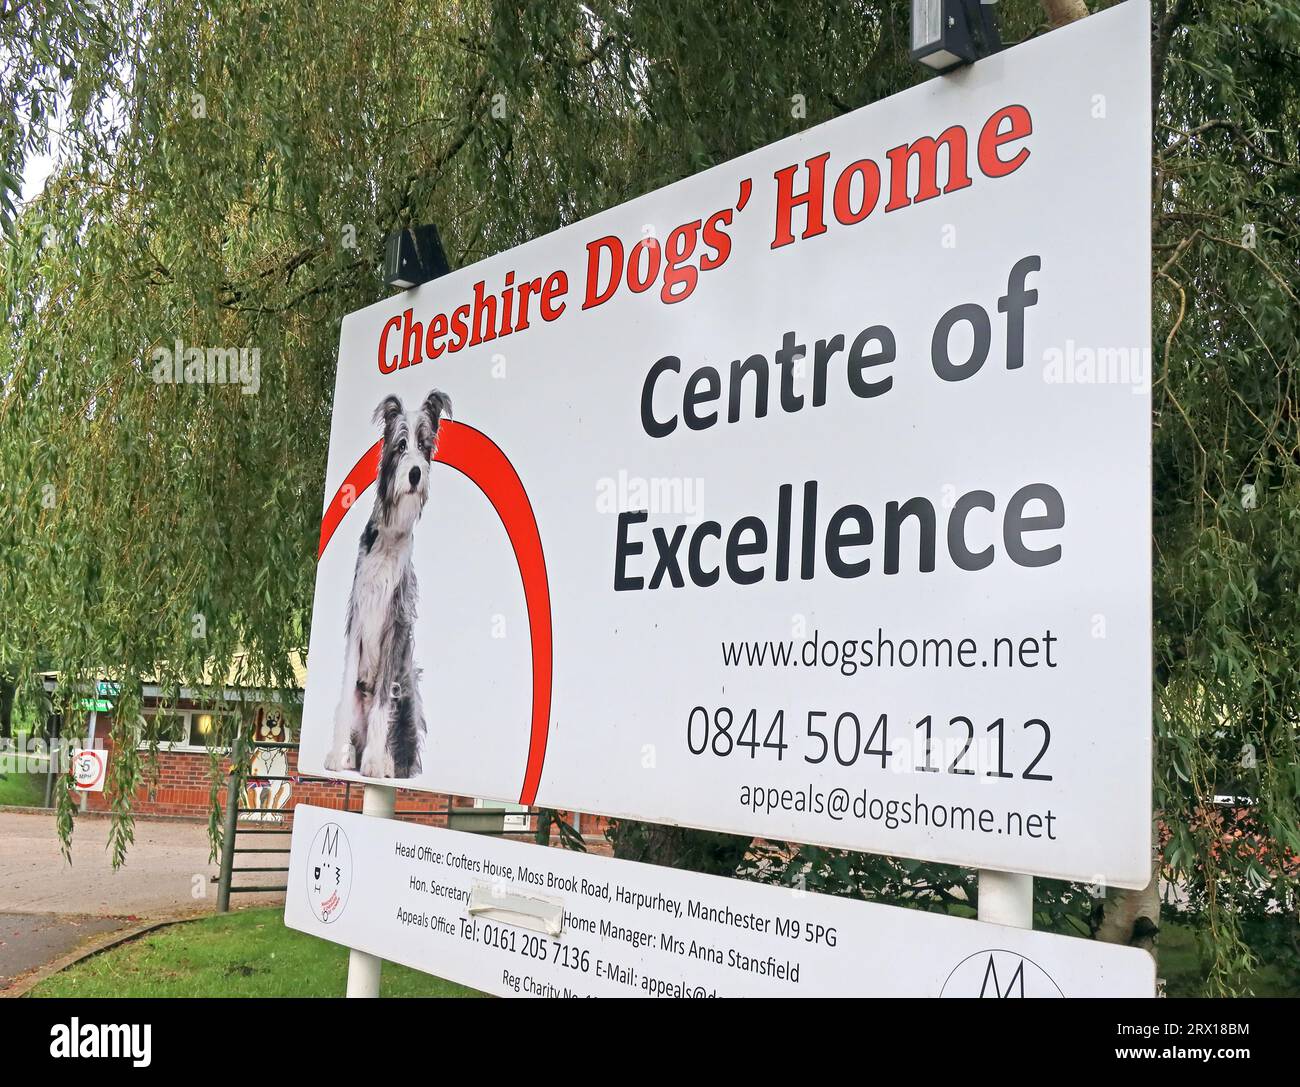 Cheshire Dogs Home, centro di eccellenza, Grappenhall, 225 Knutsford Rd, Thelwall, Warrington, Cheshire, Inghilterra, Regno Unito, WA4 3JZ Foto Stock